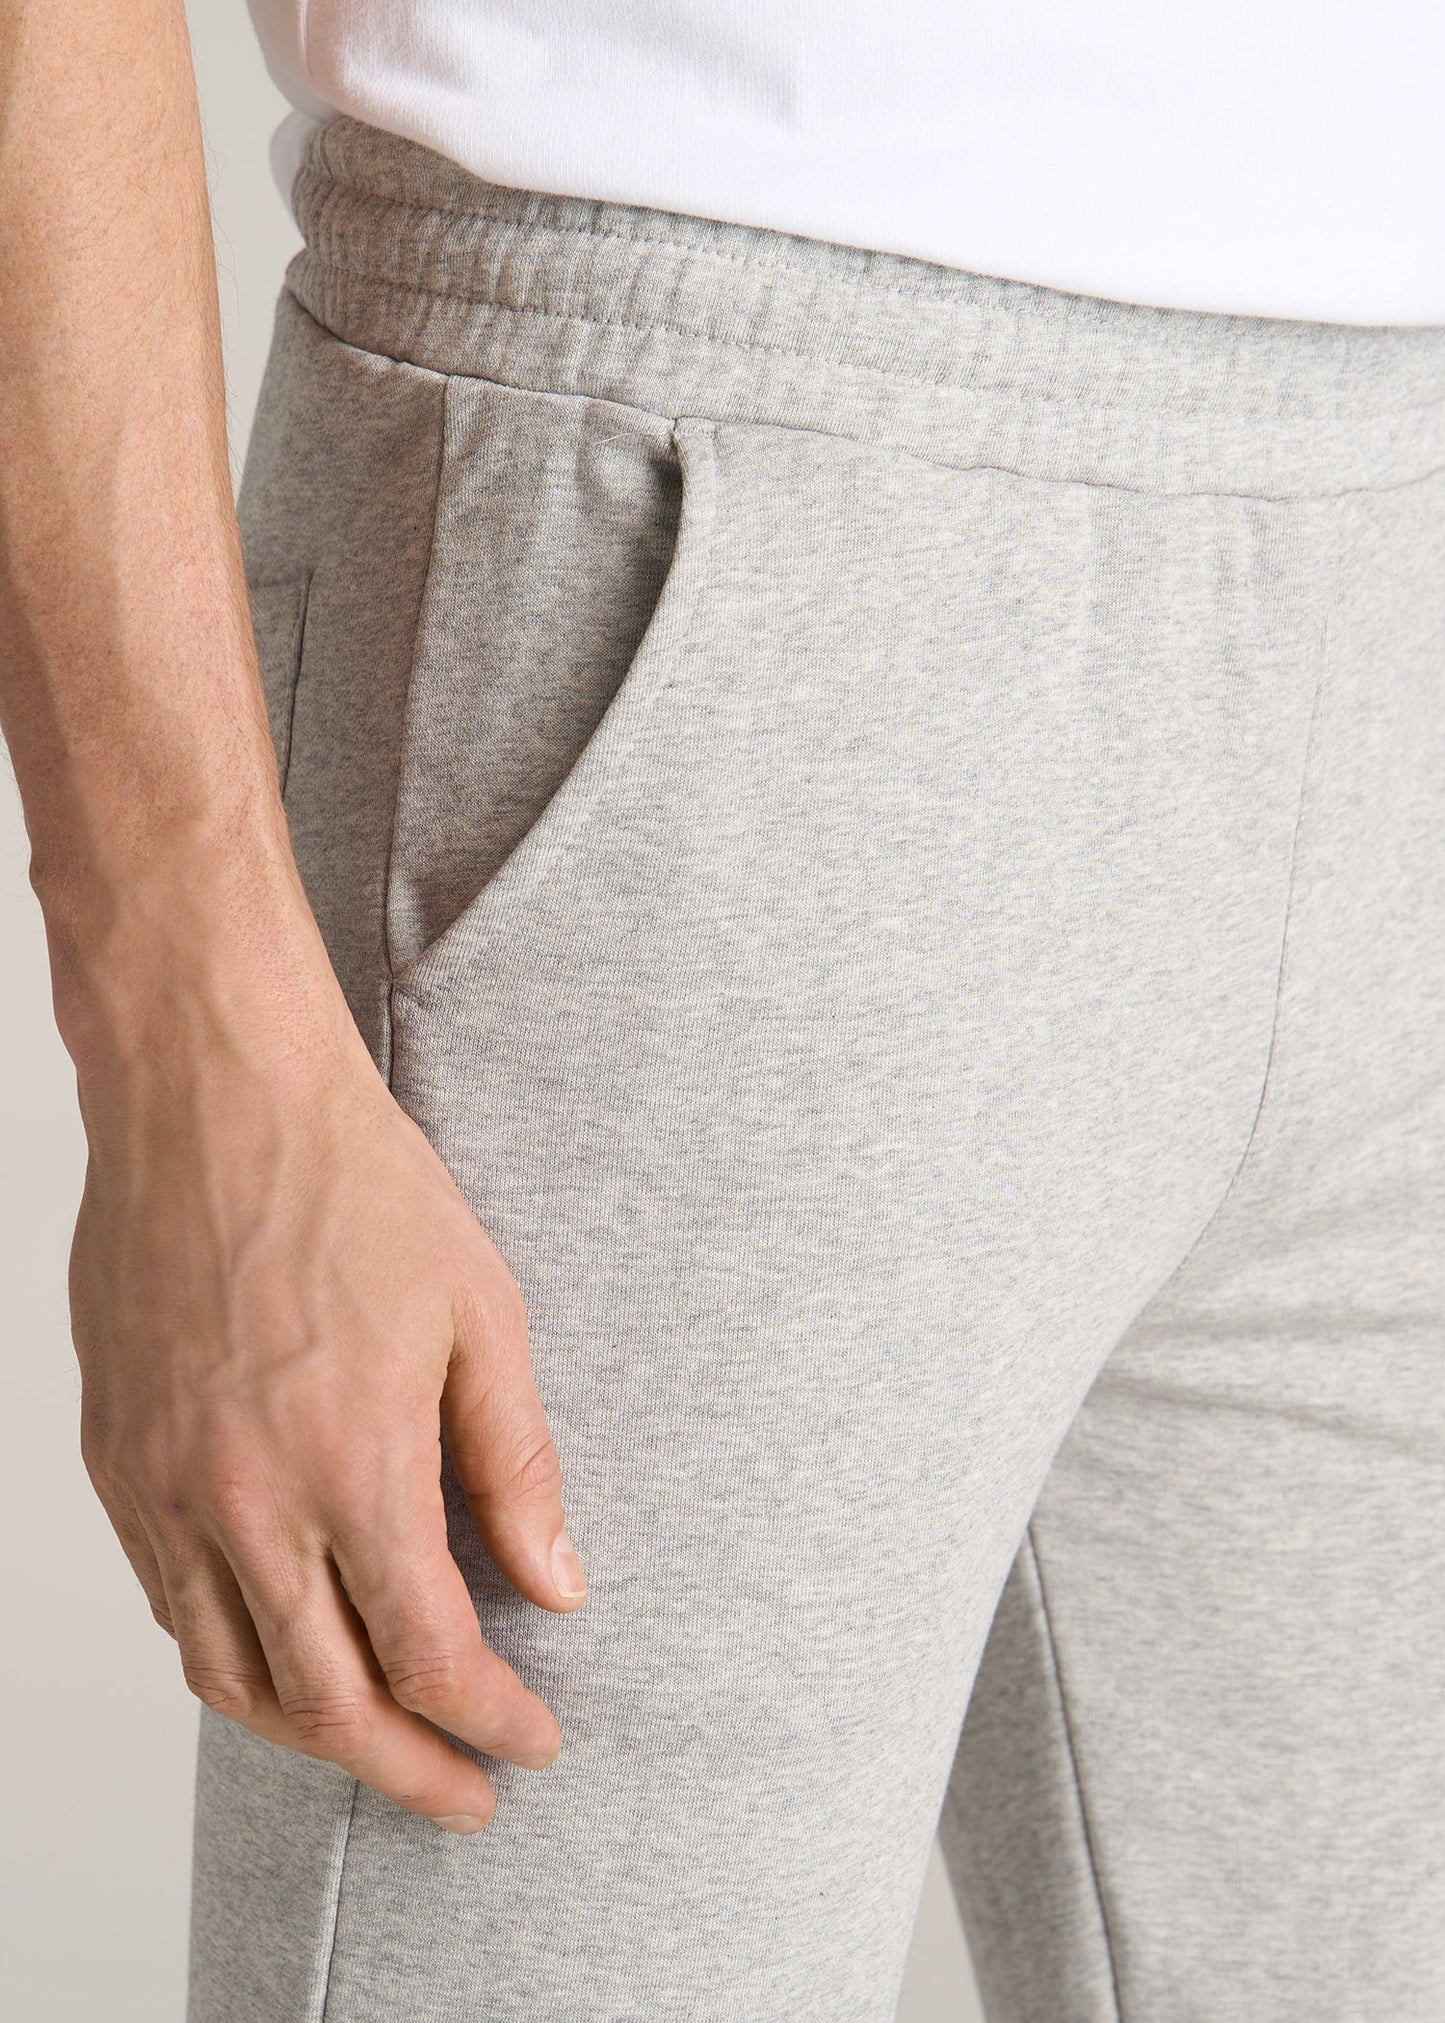 Wearever Fleece Elastic-Bottom Sweatpants for Tall Men in Grey Mix